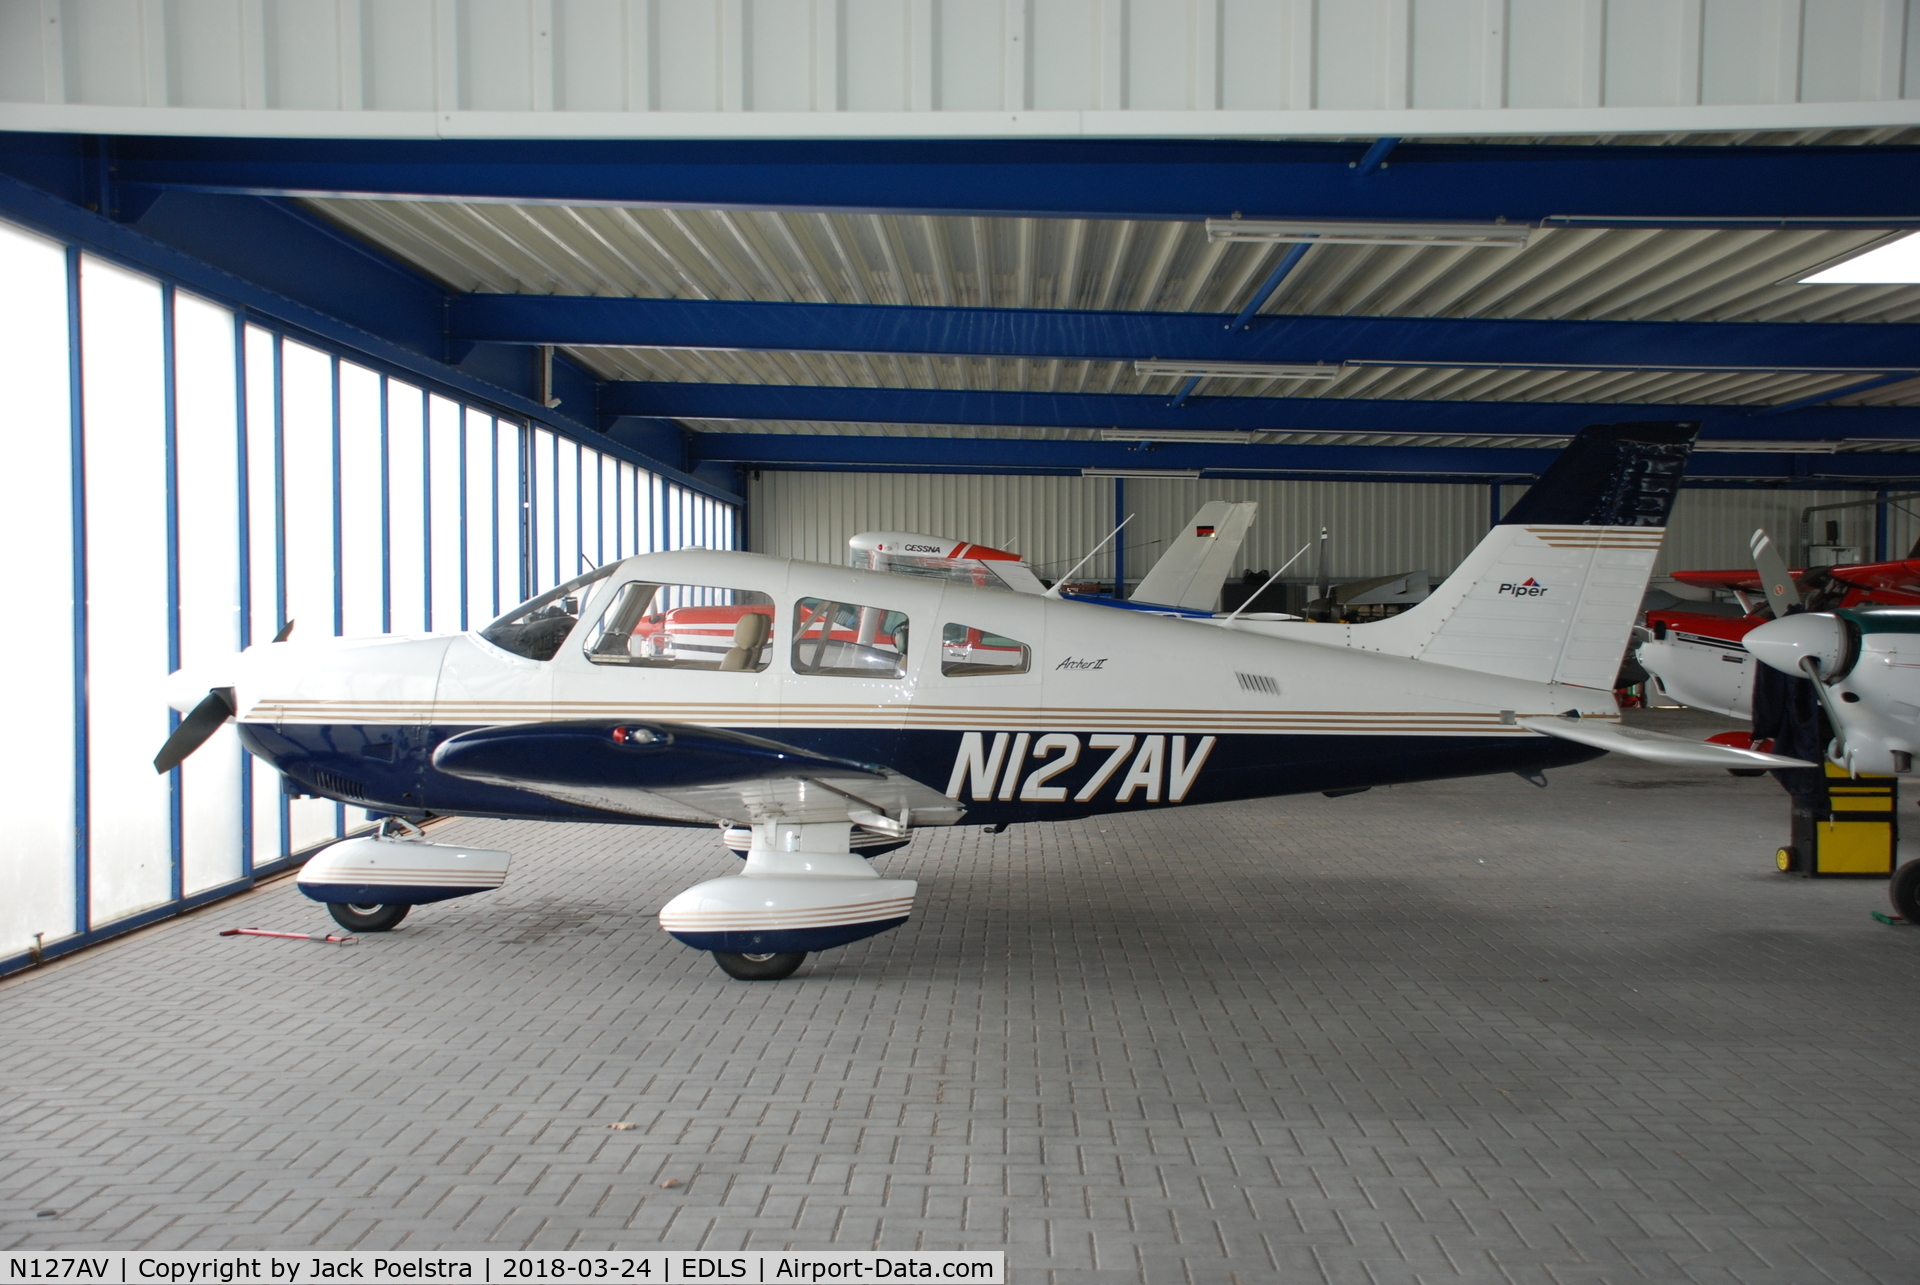 N127AV, 1984 Piper PA-28-181 C/N 28-8490077, N127AV based at Stadtlohn airport Germany